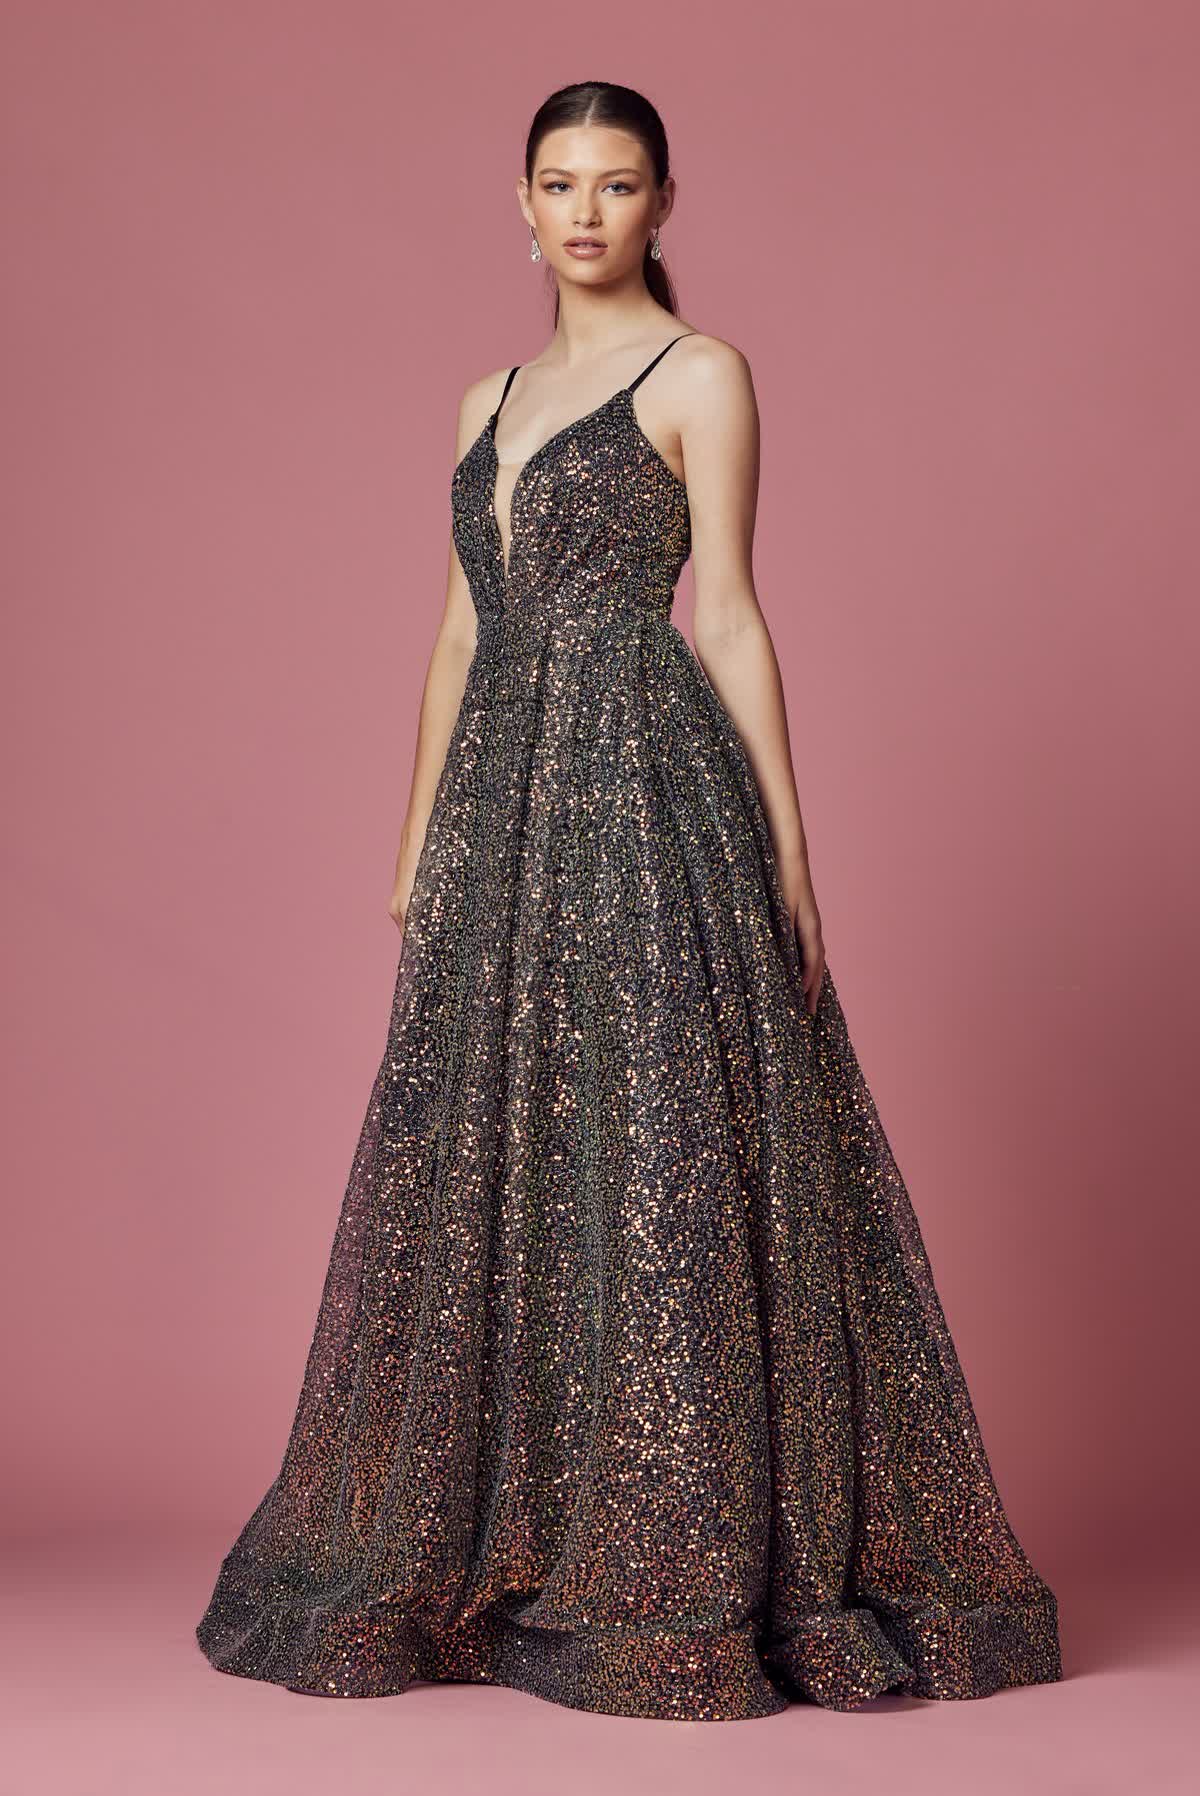 Embellished Sequin Illusion V-Neck A-Line Long Prom Dress NXR1030-Prom Dress-smcfashion.com